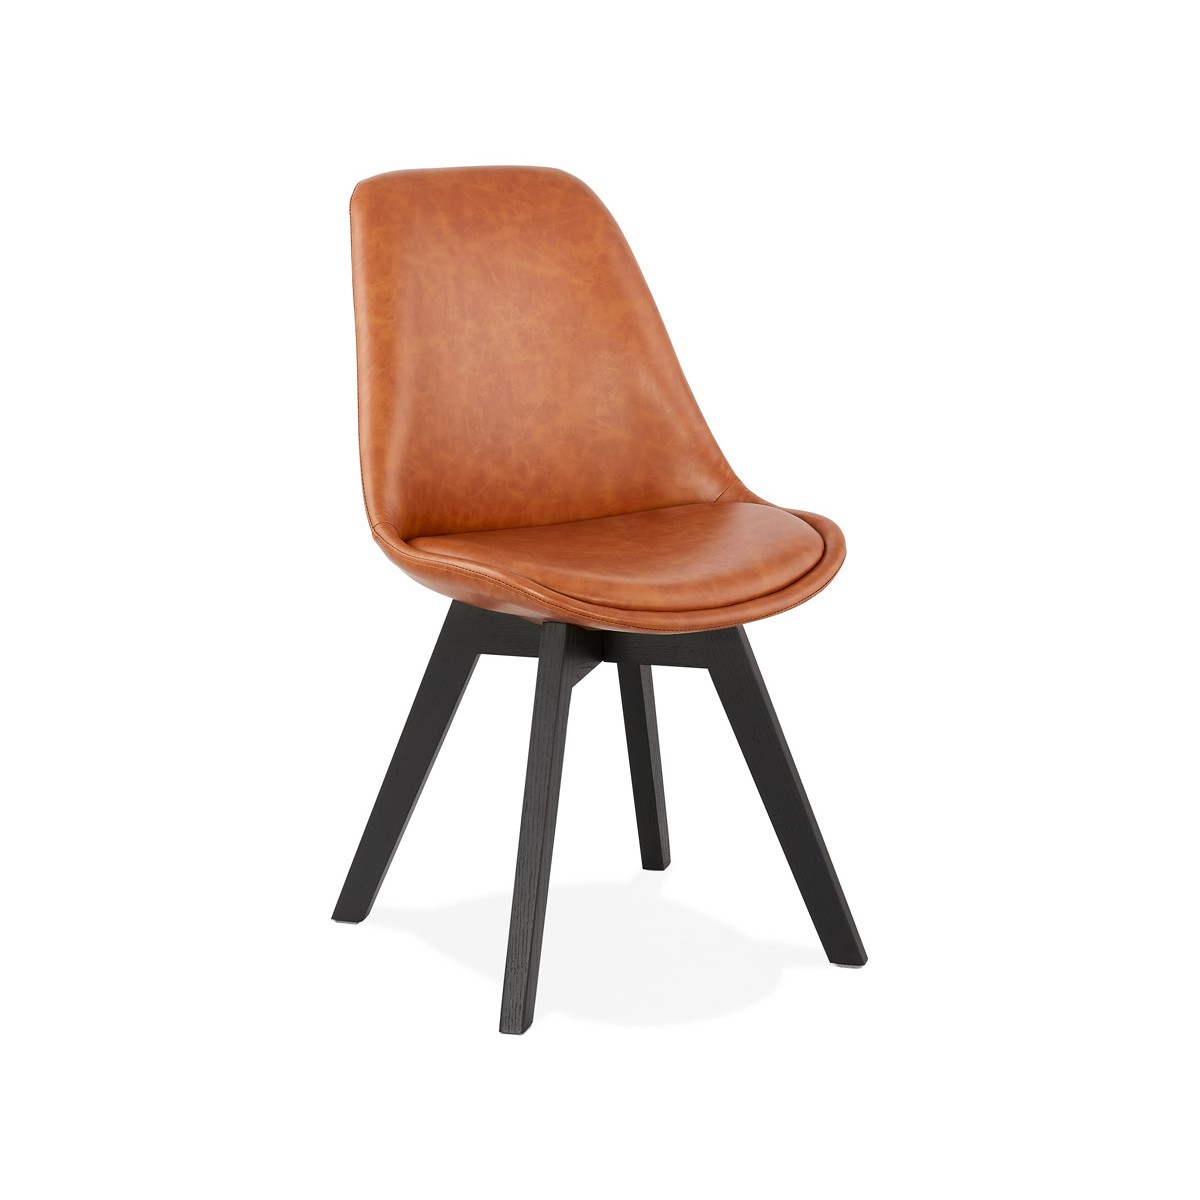 Bemerkenswert und komfortabel, entscheiden Sie sich für diesen Stuhl im  industriellen Stil.